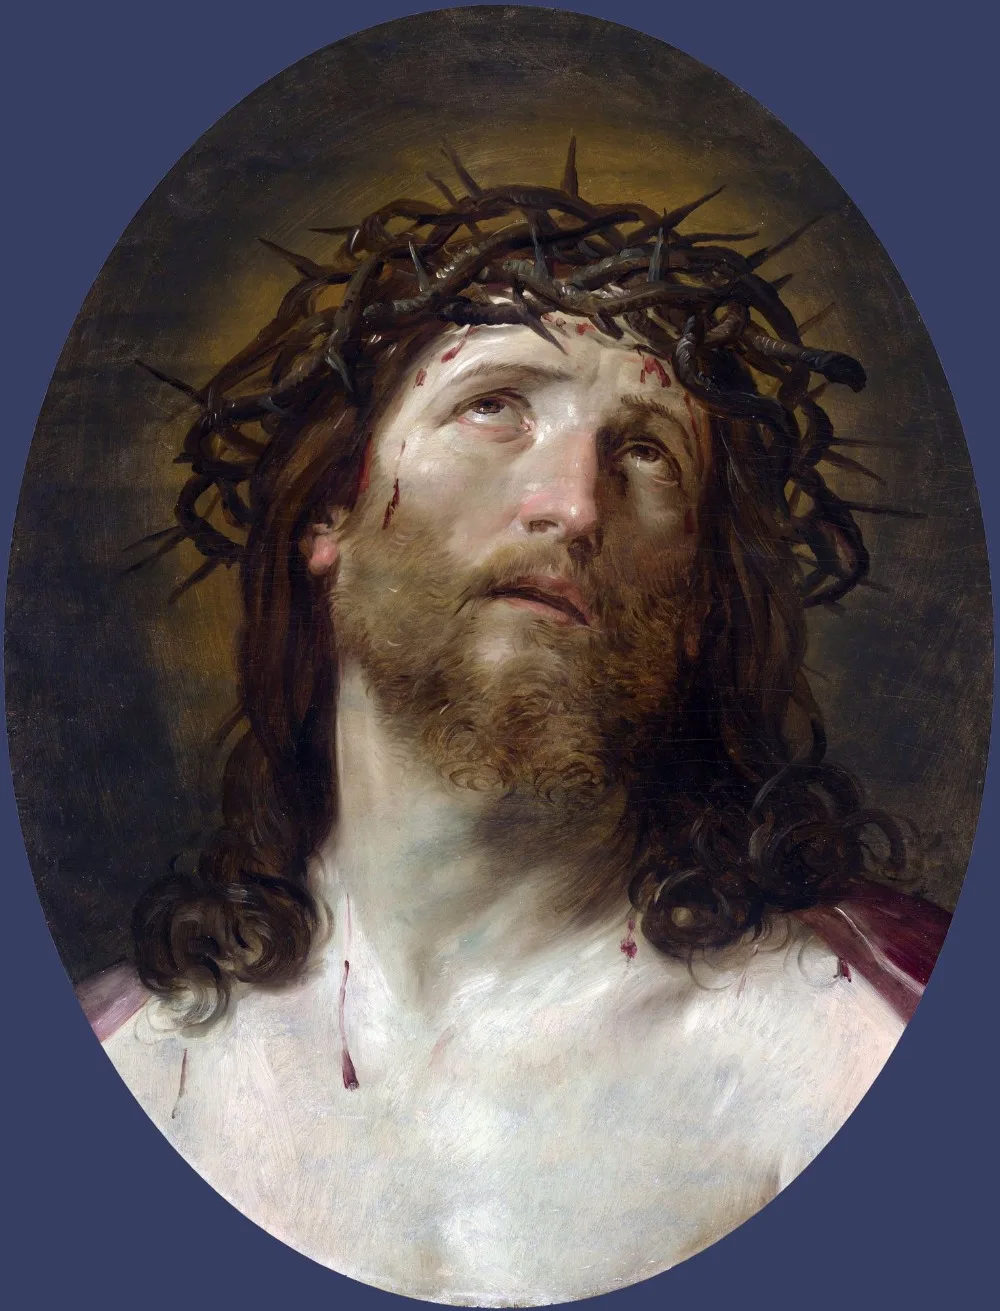 

Первоклассное Религиозное искусство-портрет Иисуса Христа картина маслом печать-хорошее качество Картина на холсте-стоимость